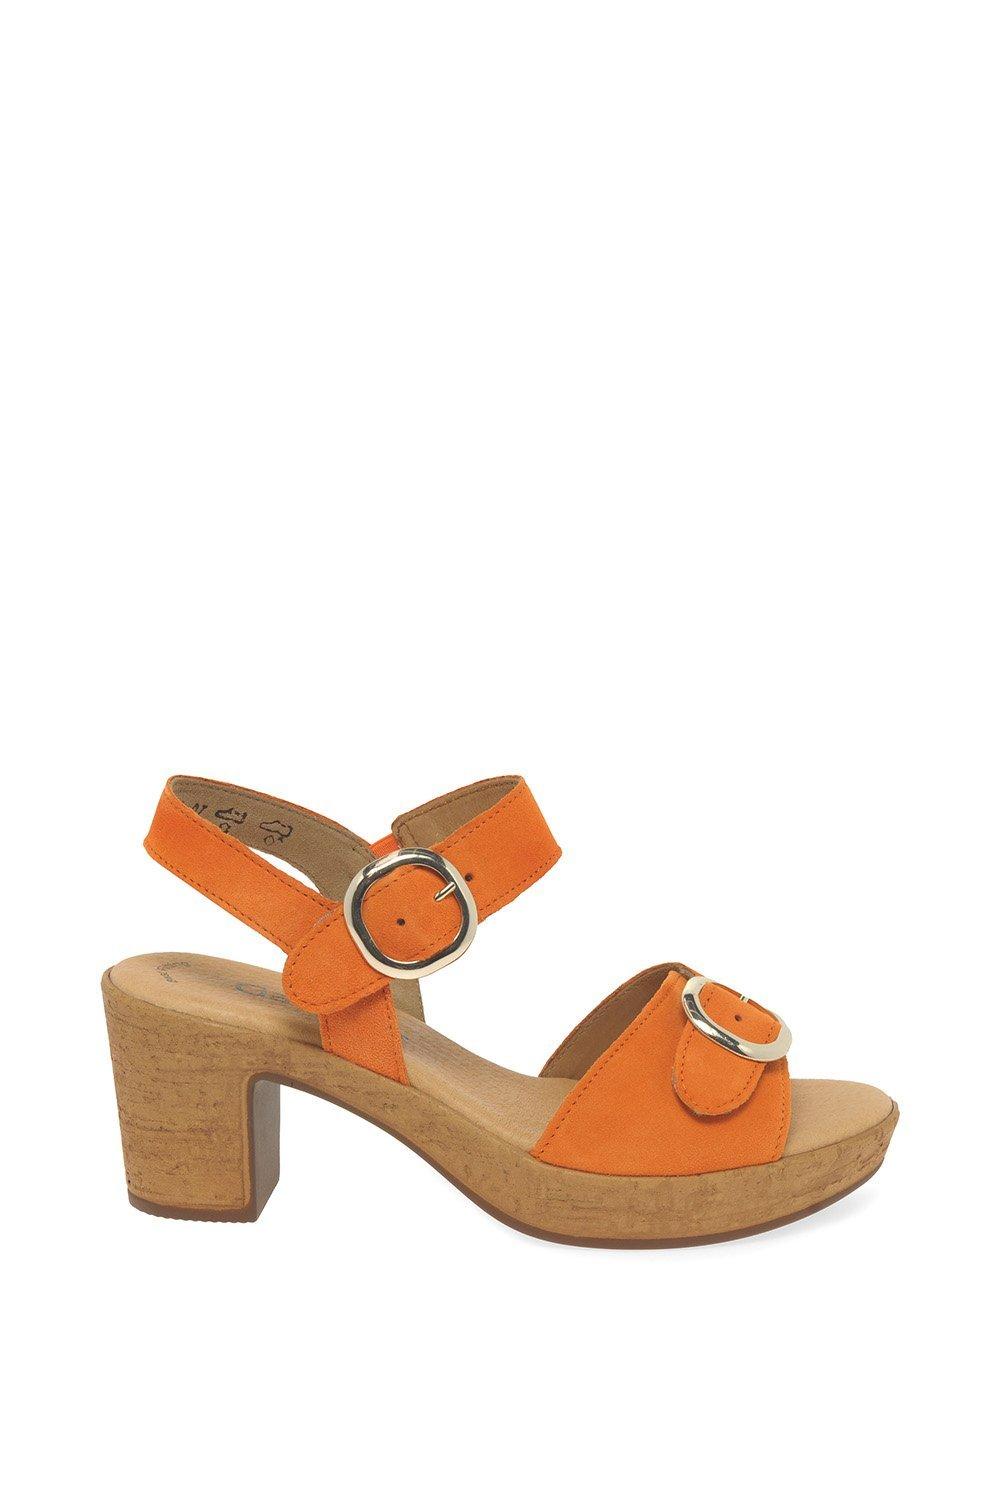 Босоножки на каблуке 'Fantastica' Gabor, оранжевый